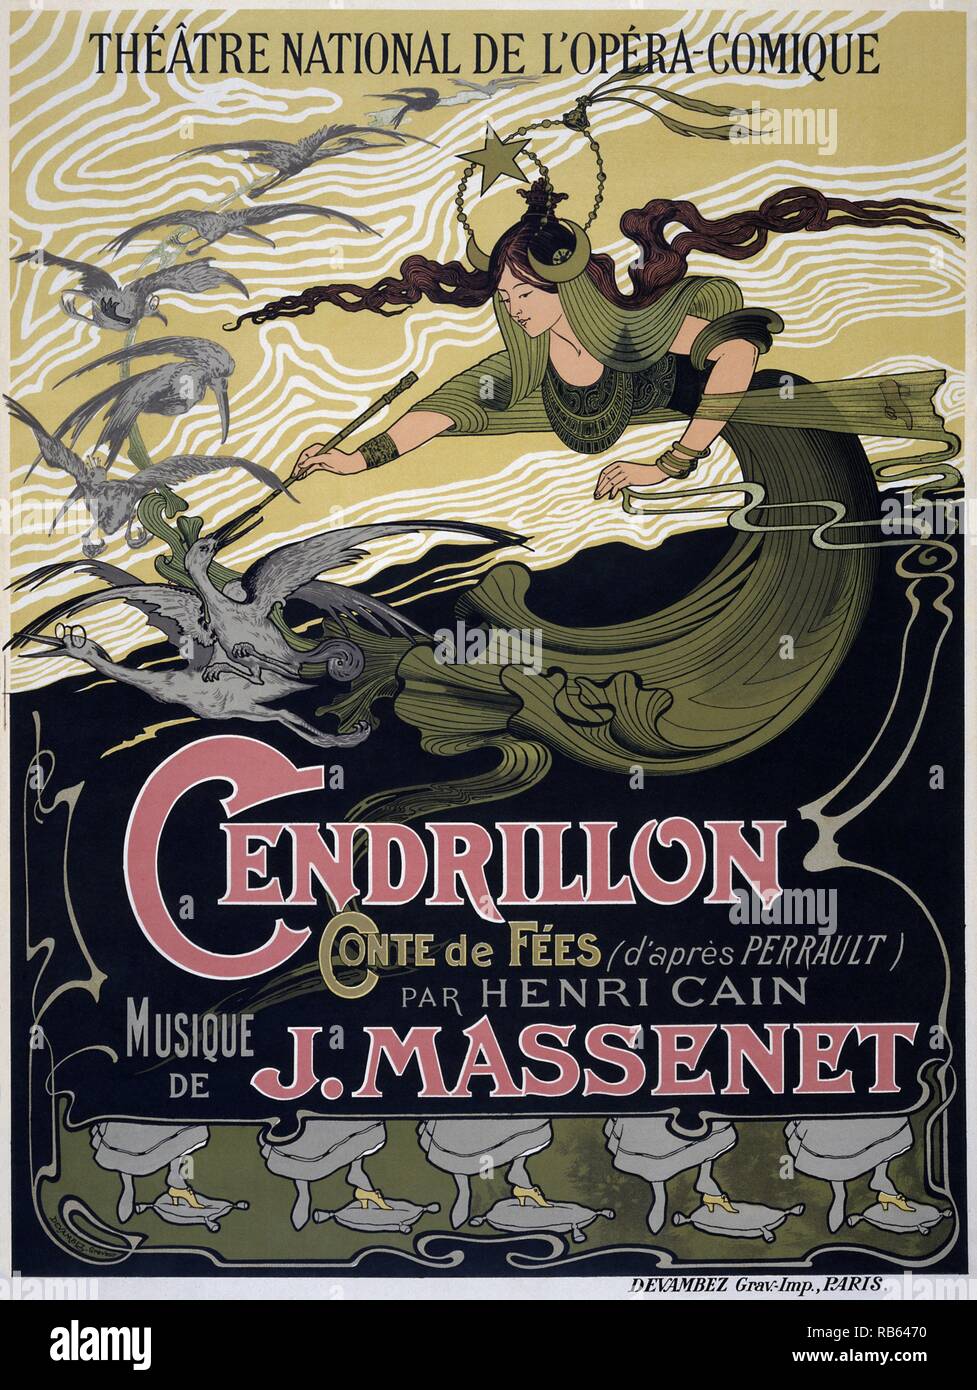 Cendrillon (Cinderella) est un opéra-décrit comme un 'conte de fées'-en quatre actes de Jules Massenet sur un livret en français Henri CaA-n d'après Perrault, 1698 version du conte de Cendrillon. Il a été donné sa première représentation le 24 mai 1899 à Paris. Banque D'Images